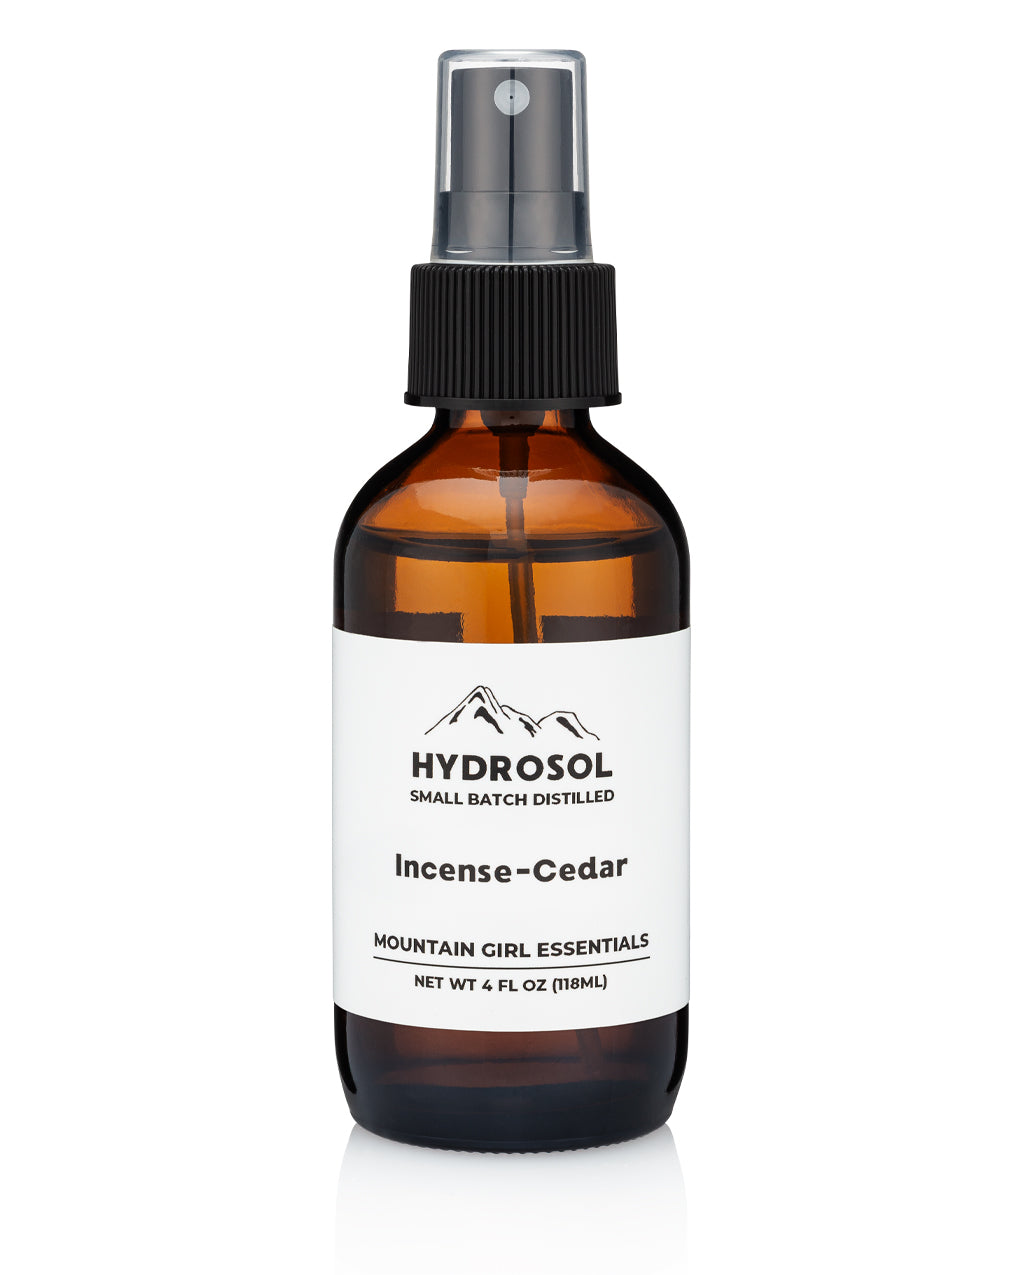 Incense-Cedar Hydrosol